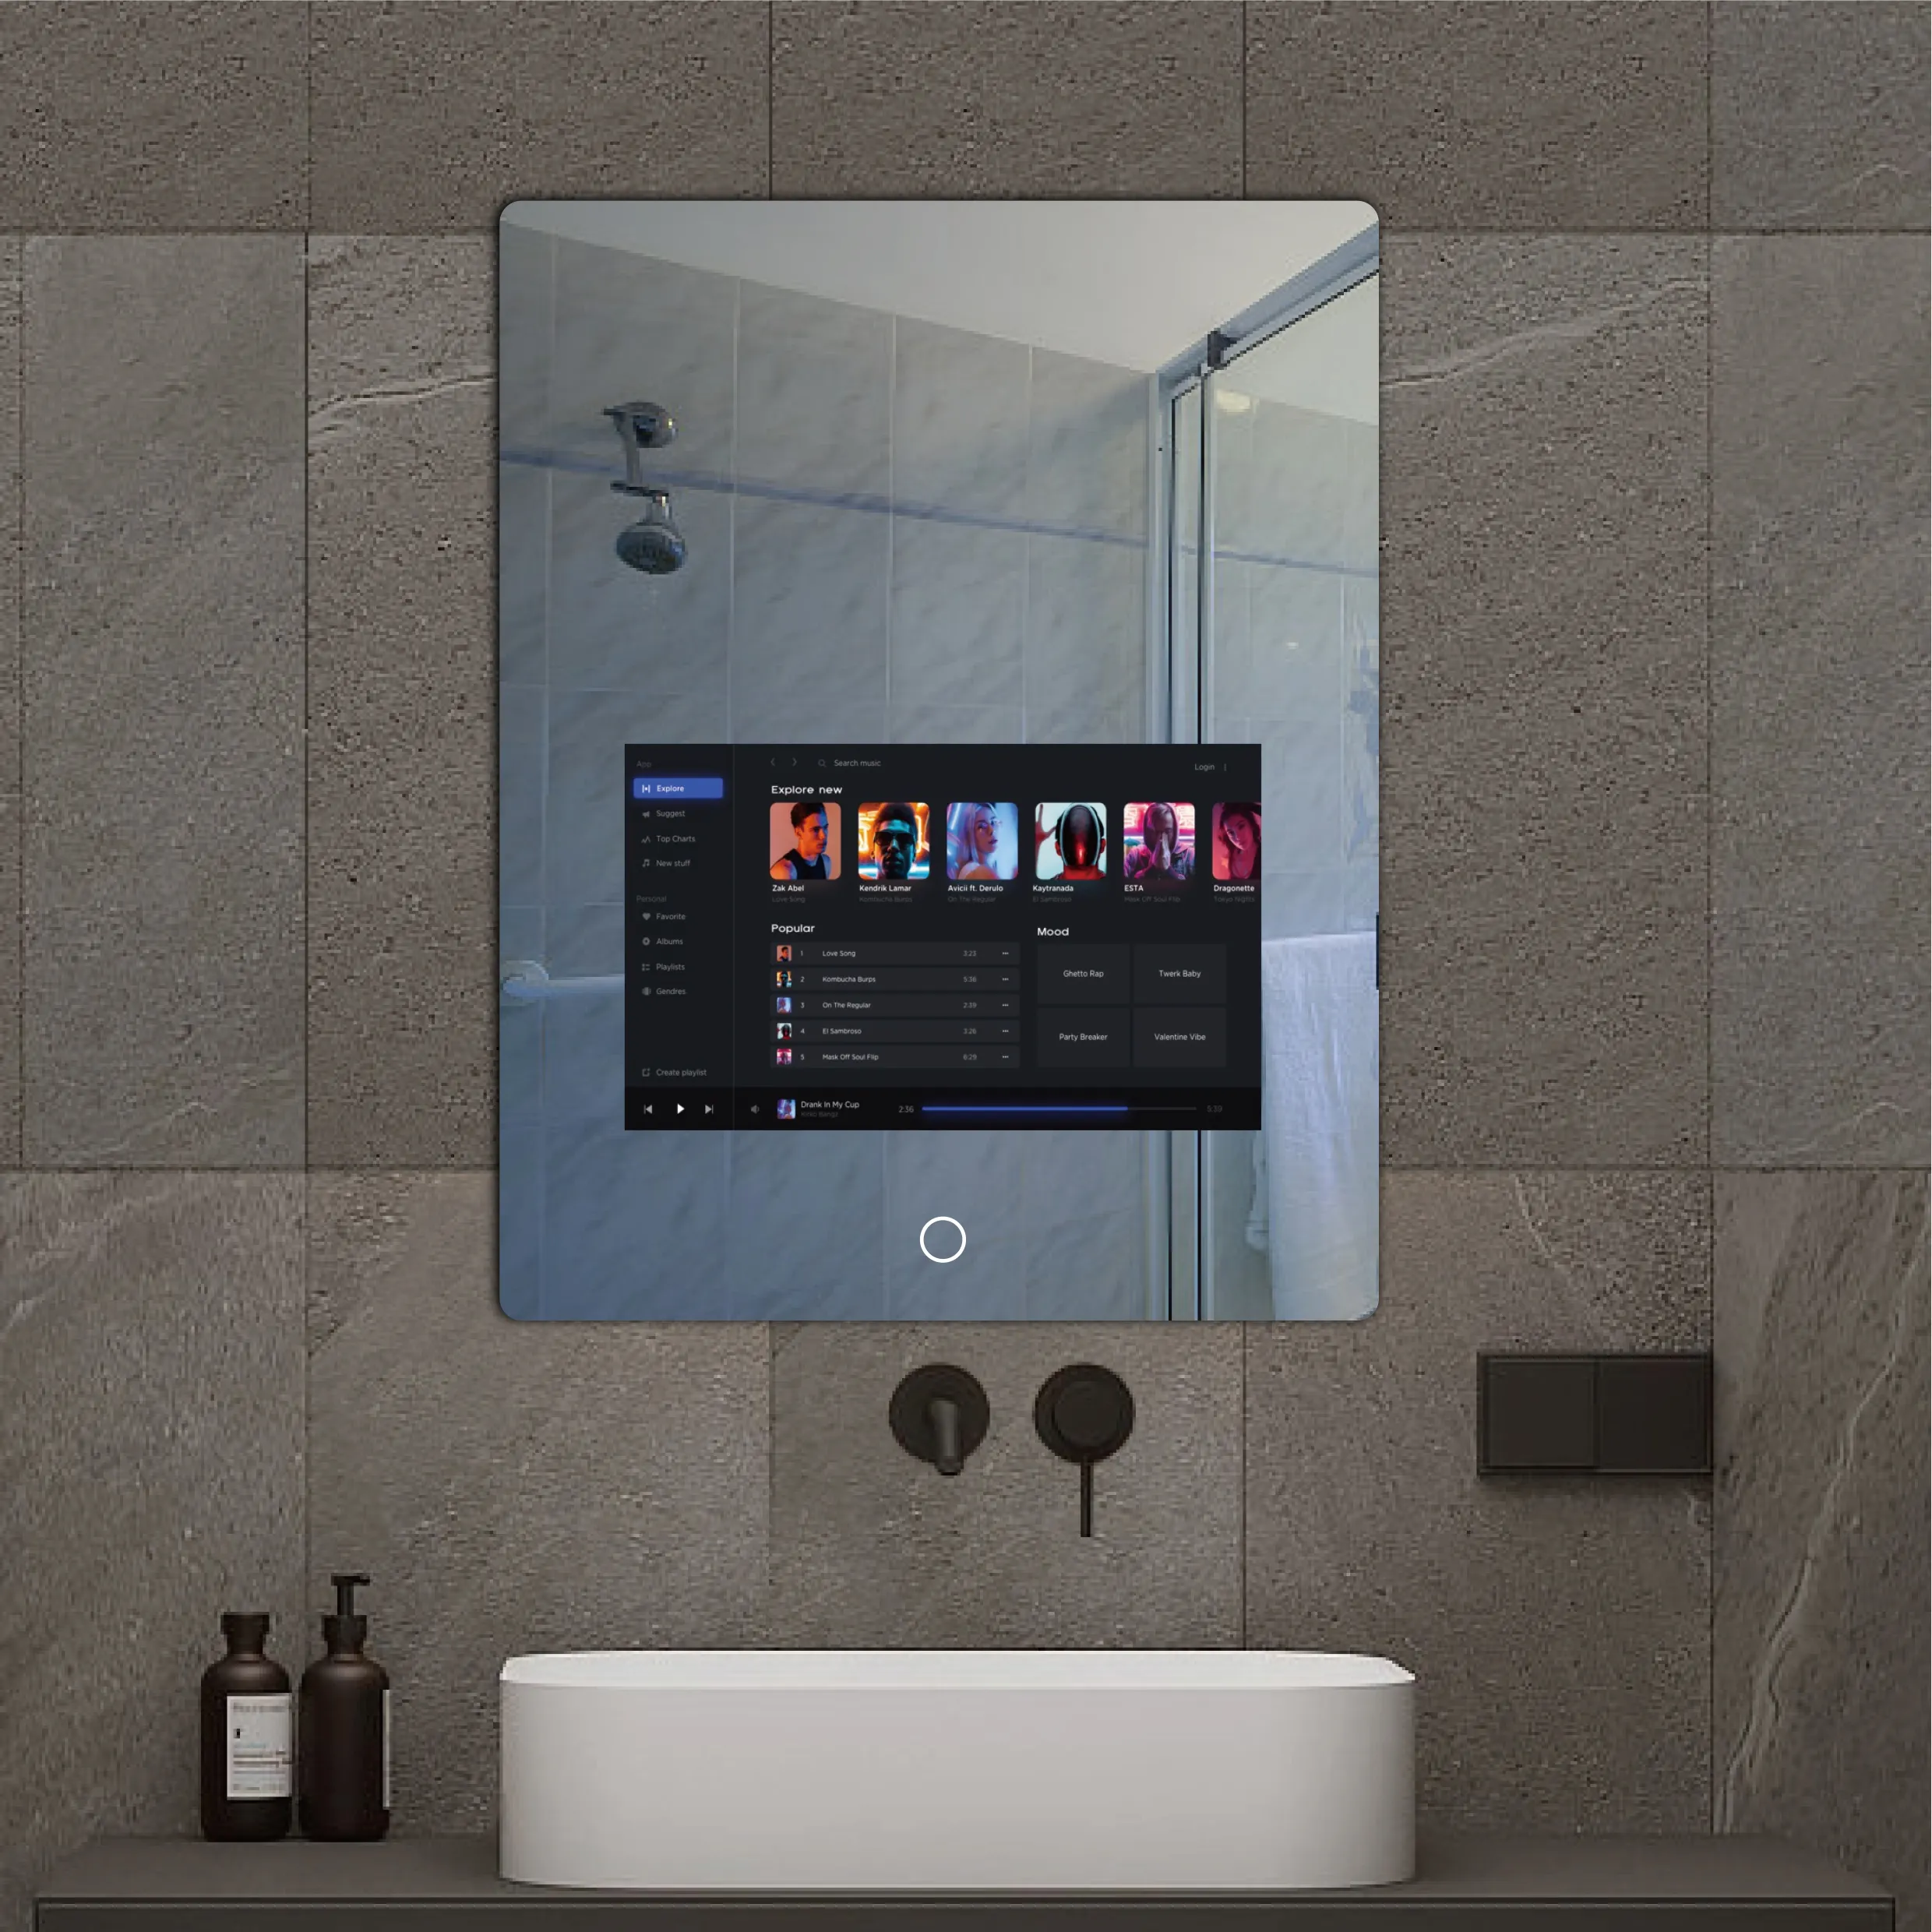 FUDAKIN Waterproof Led Smart Mirror Bathroom Wall Mounted Touch Screen Smart